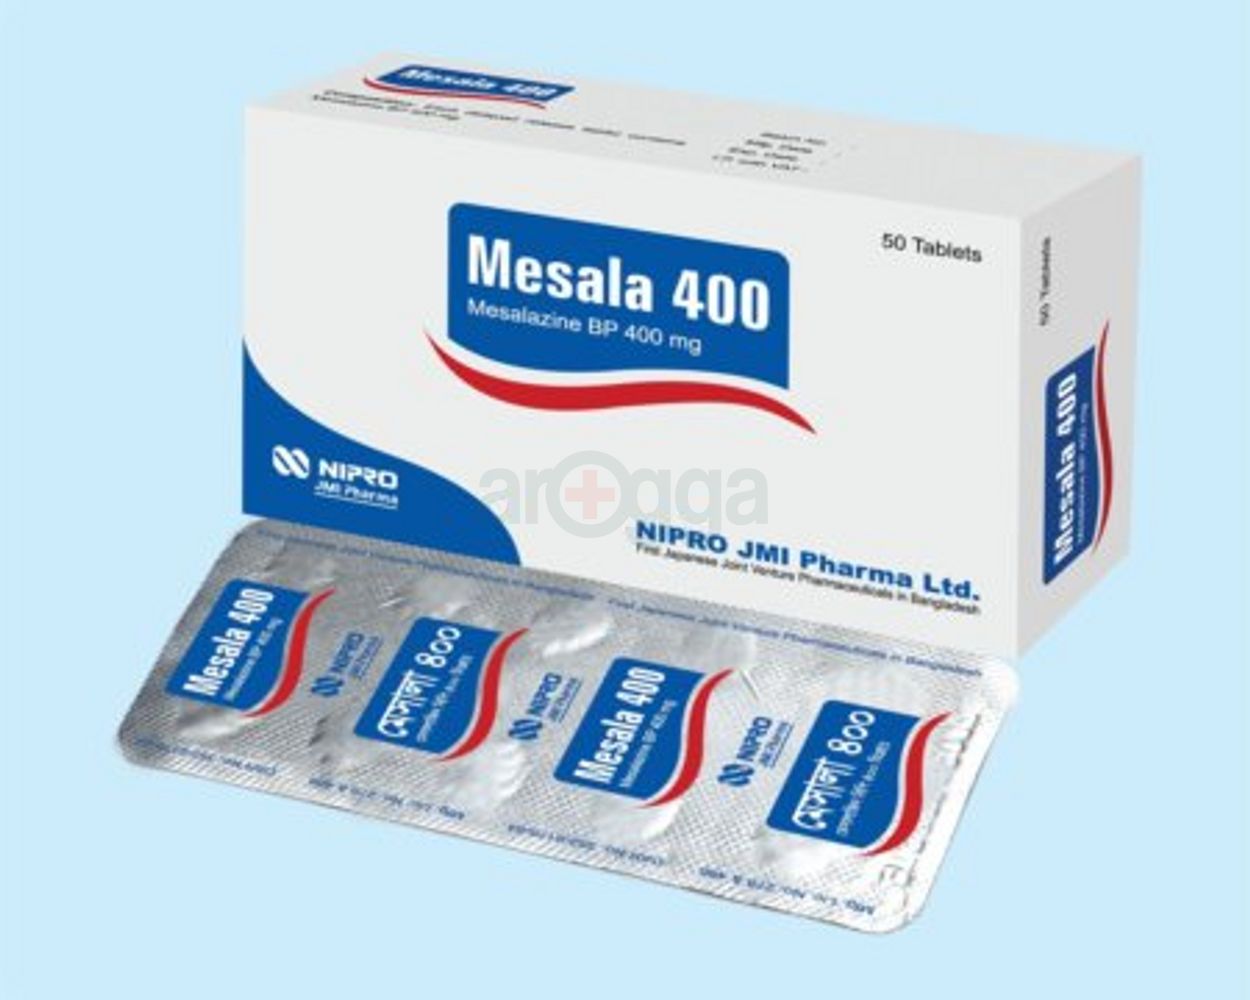 Mesala 400